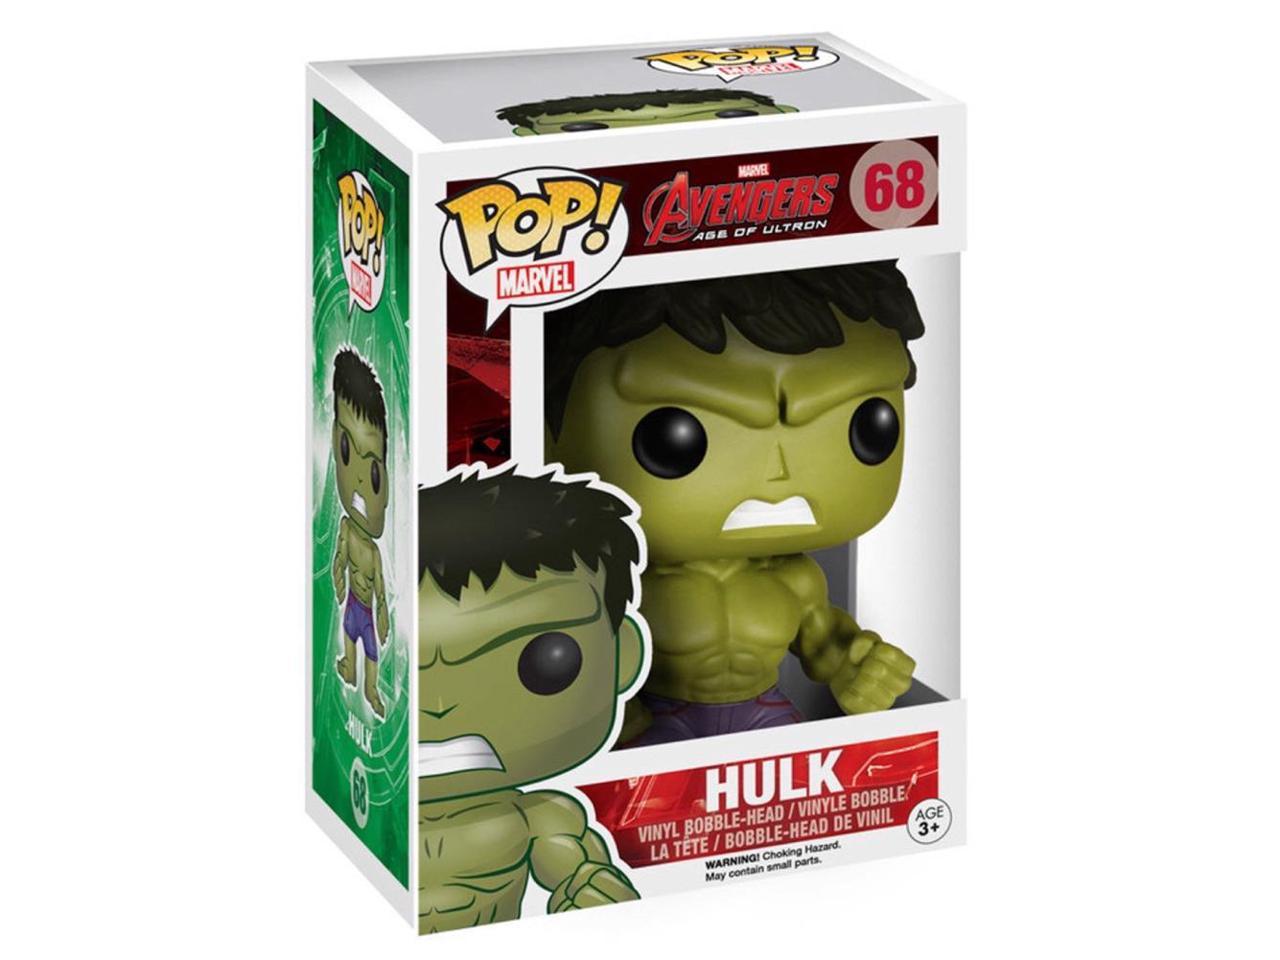 Avengers 2 Age of Ultron Hulk Vinyl Bobble-Head 4776 NEW Funko Pop Marvel 